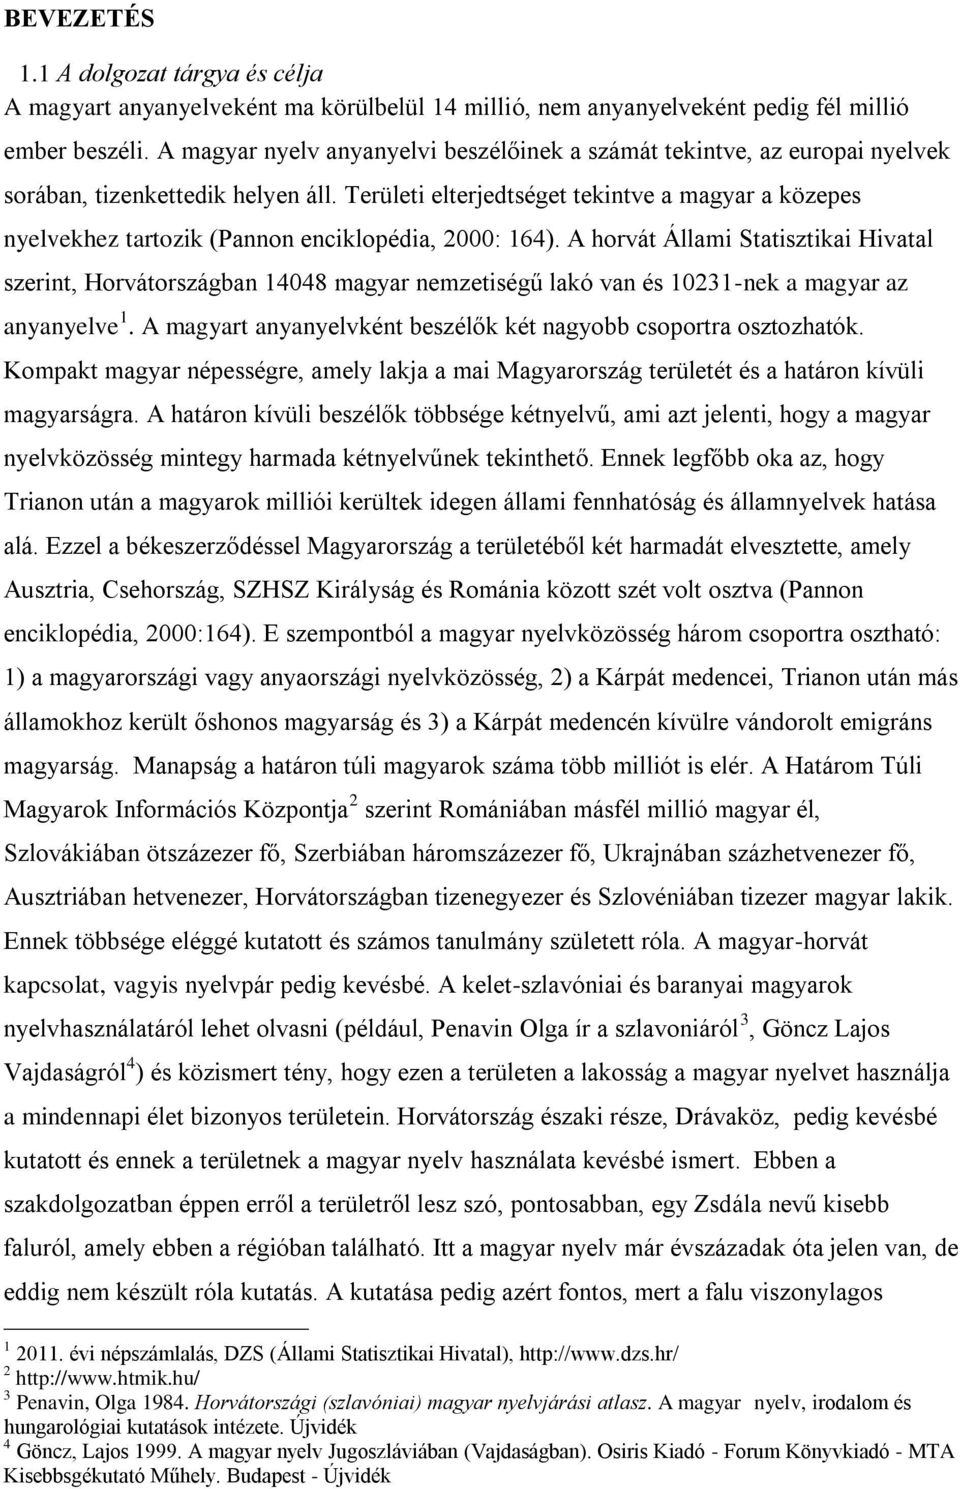 Területi elterjedtséget tekintve a magyar a közepes nyelvekhez tartozik (Pannon enciklopédia, 2000: 164).